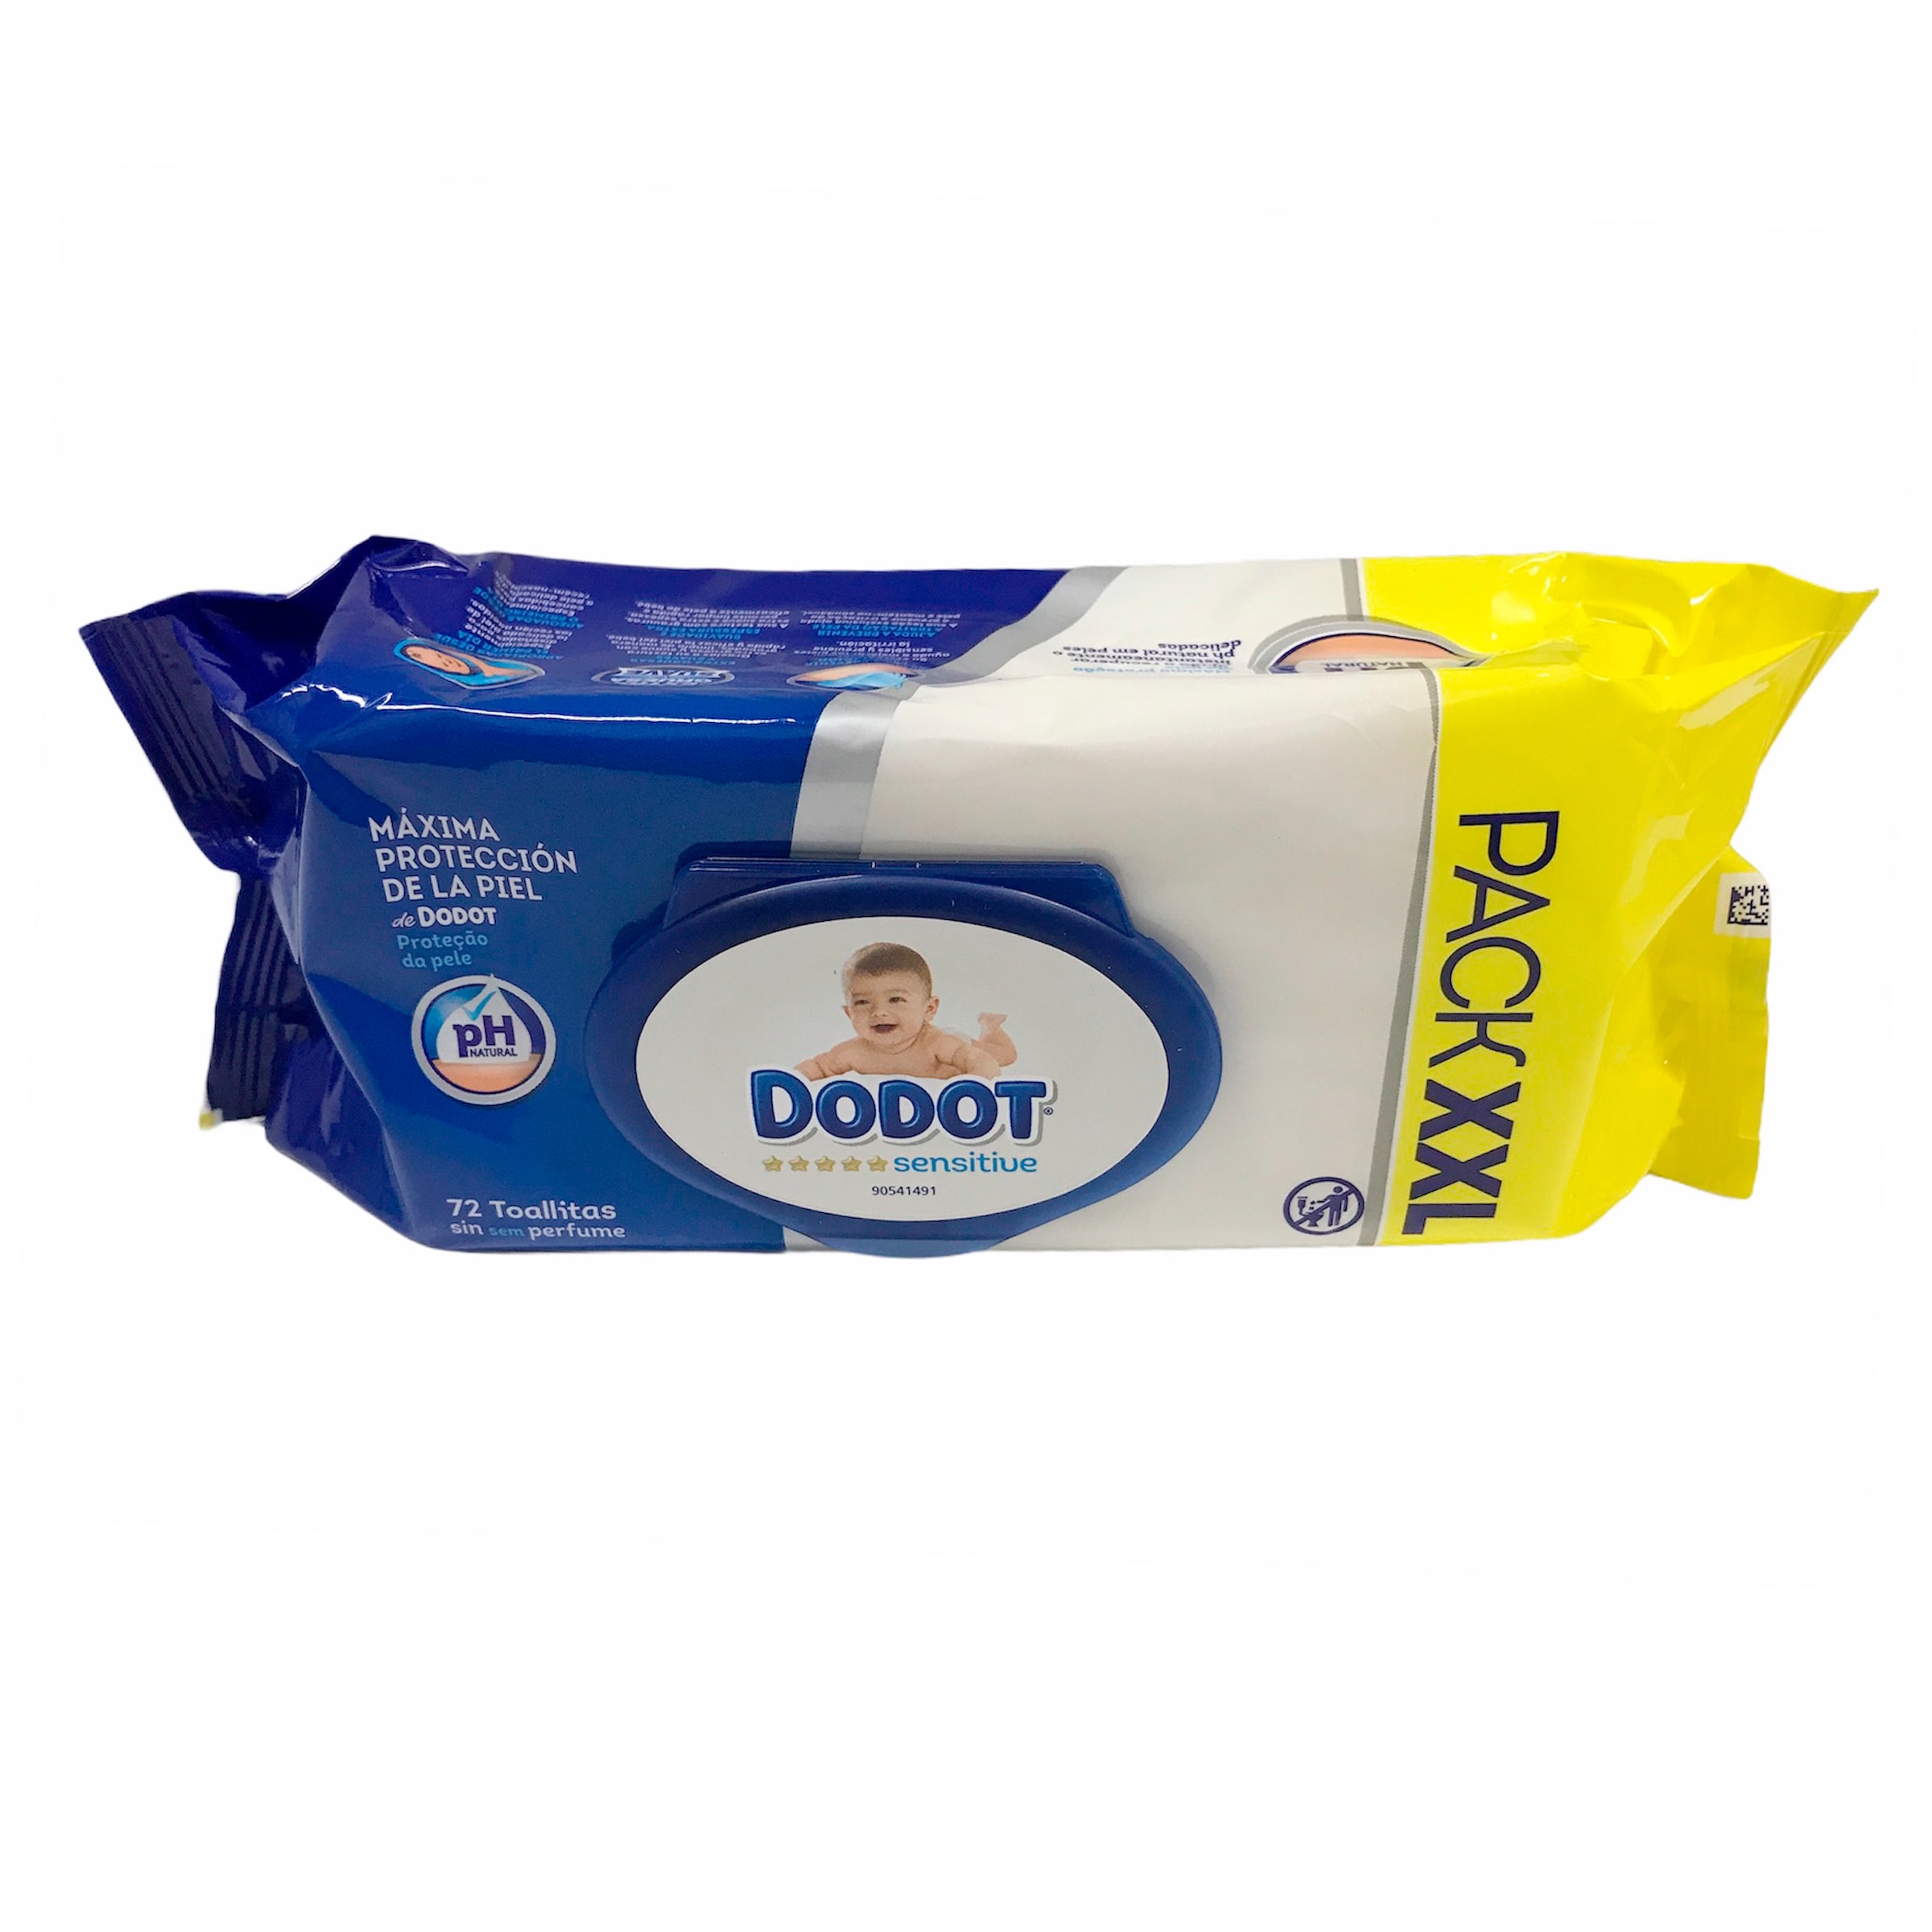 Toallitas para bebés Dodot bolsa 72 unidades - Supermercados DIA